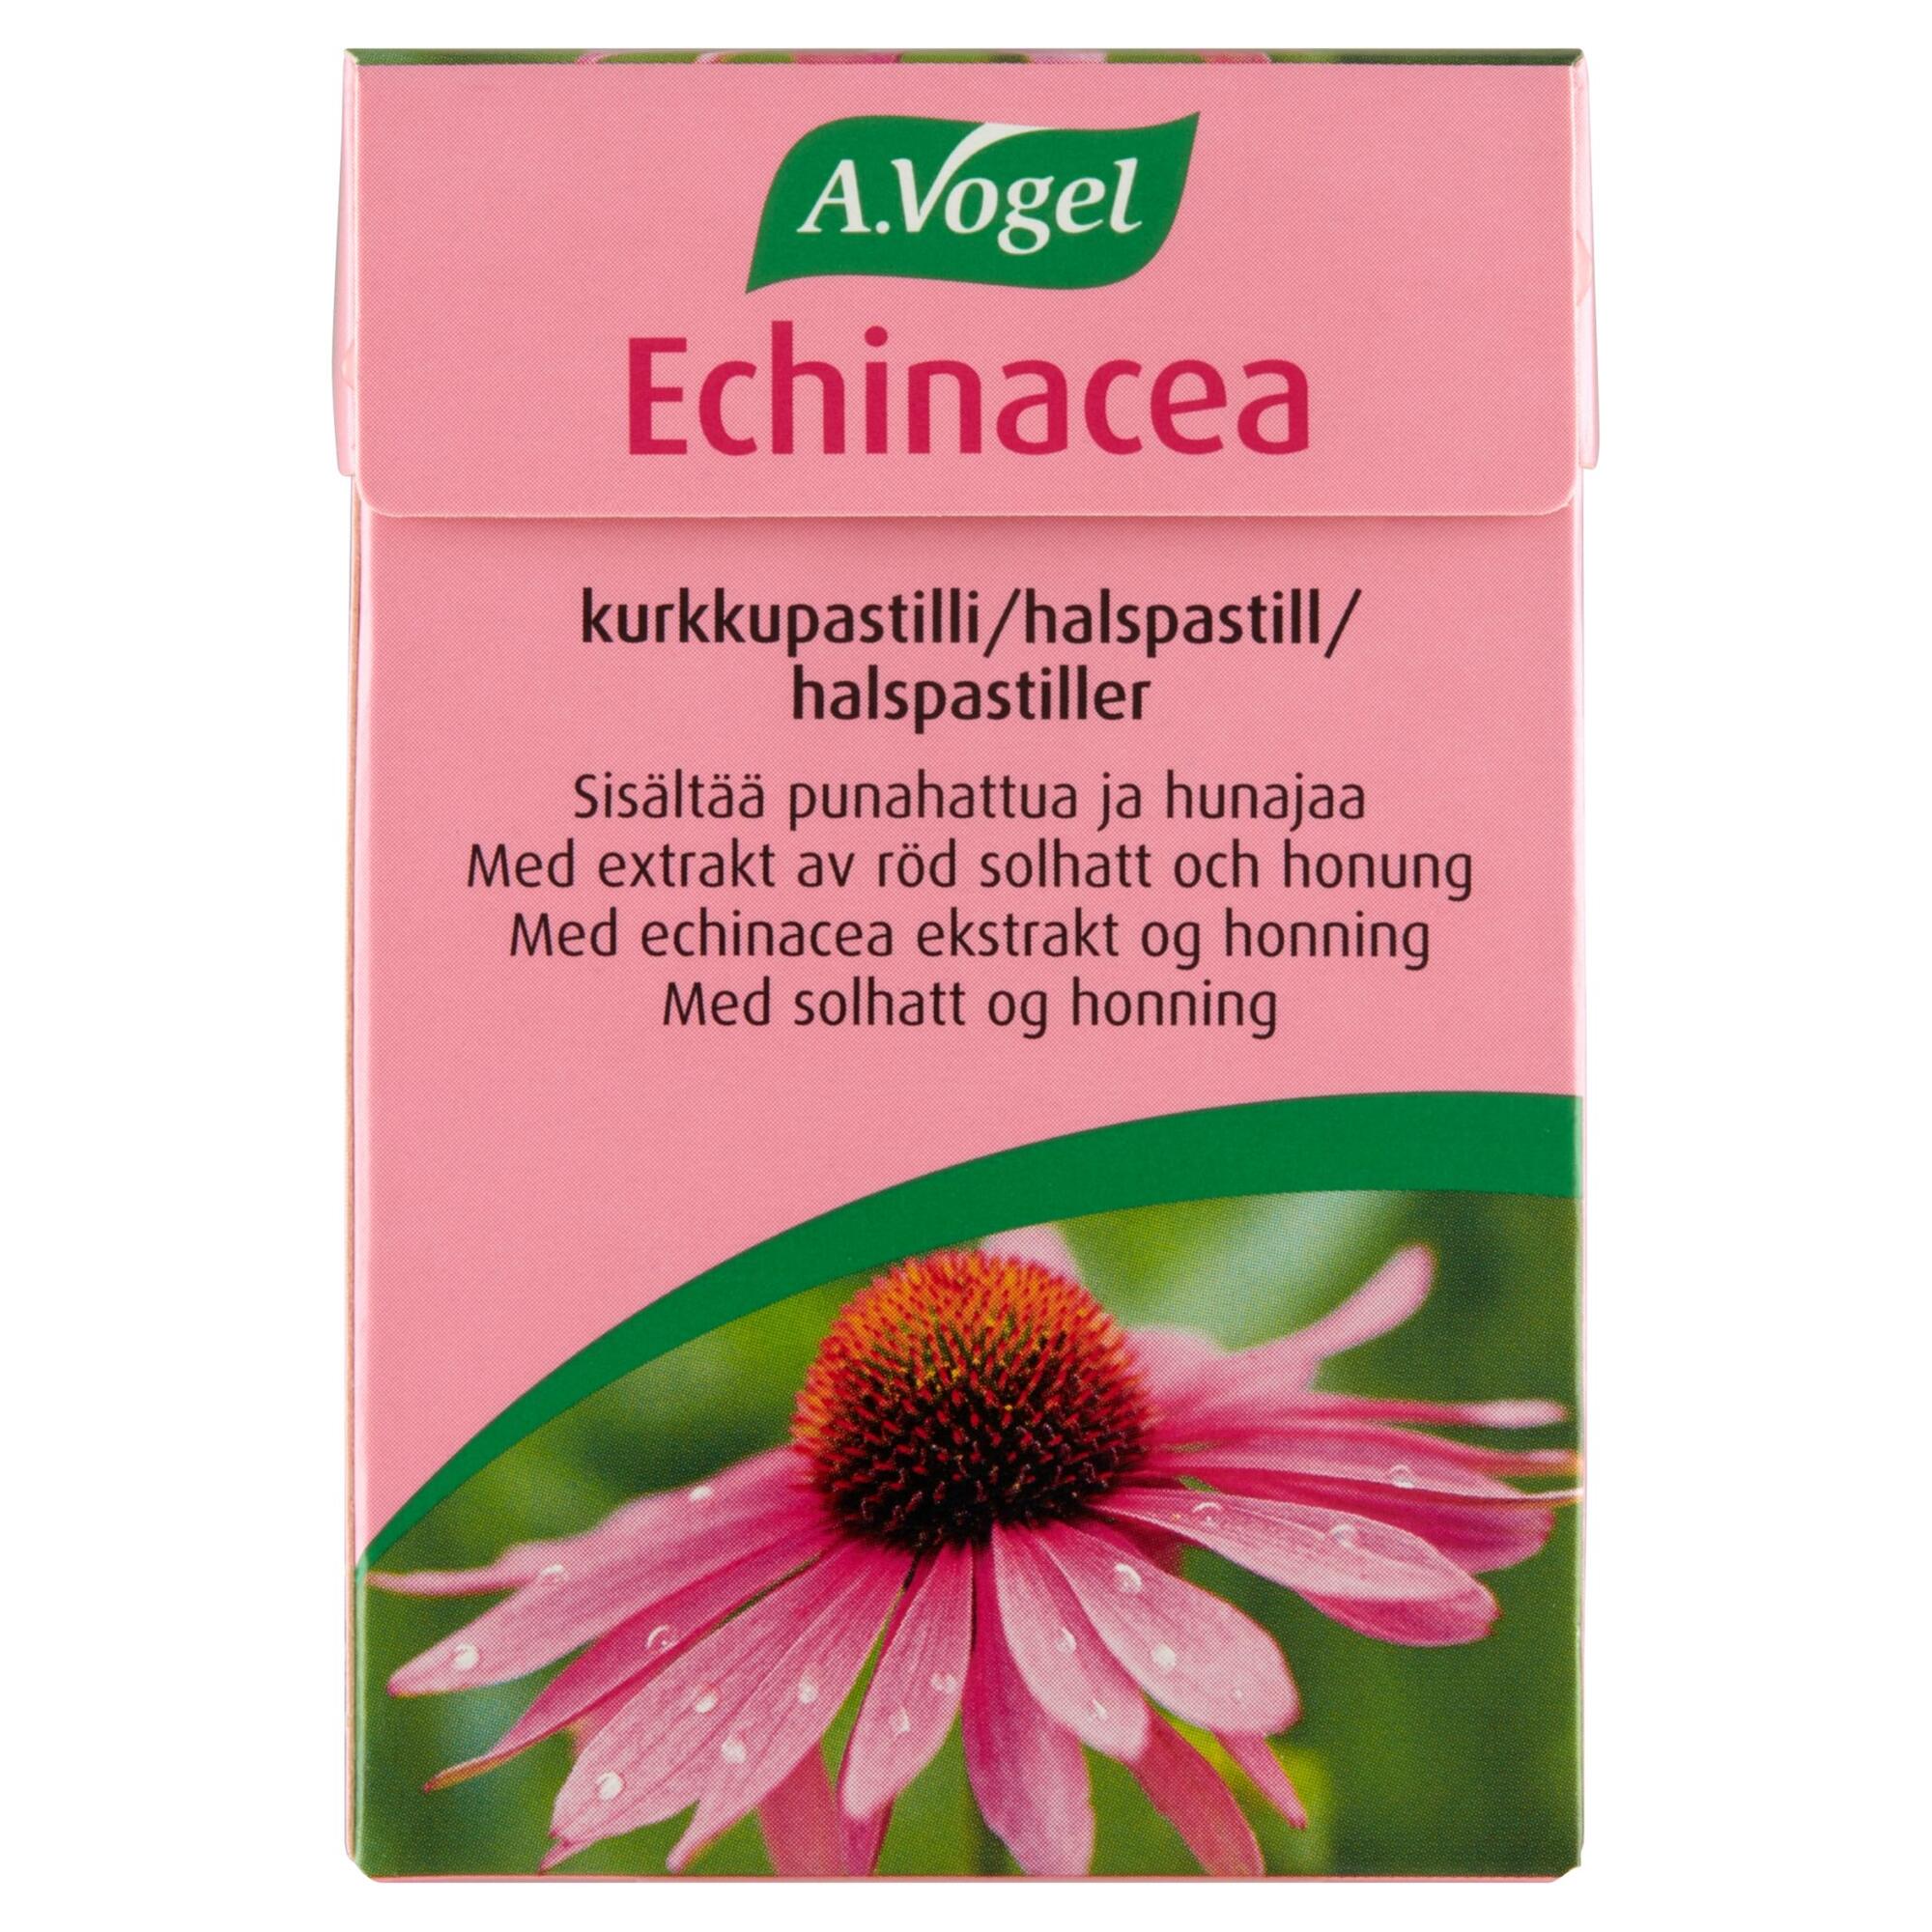 Billede af Echinacea halspastiller - 30 gram hos Duft og Natur